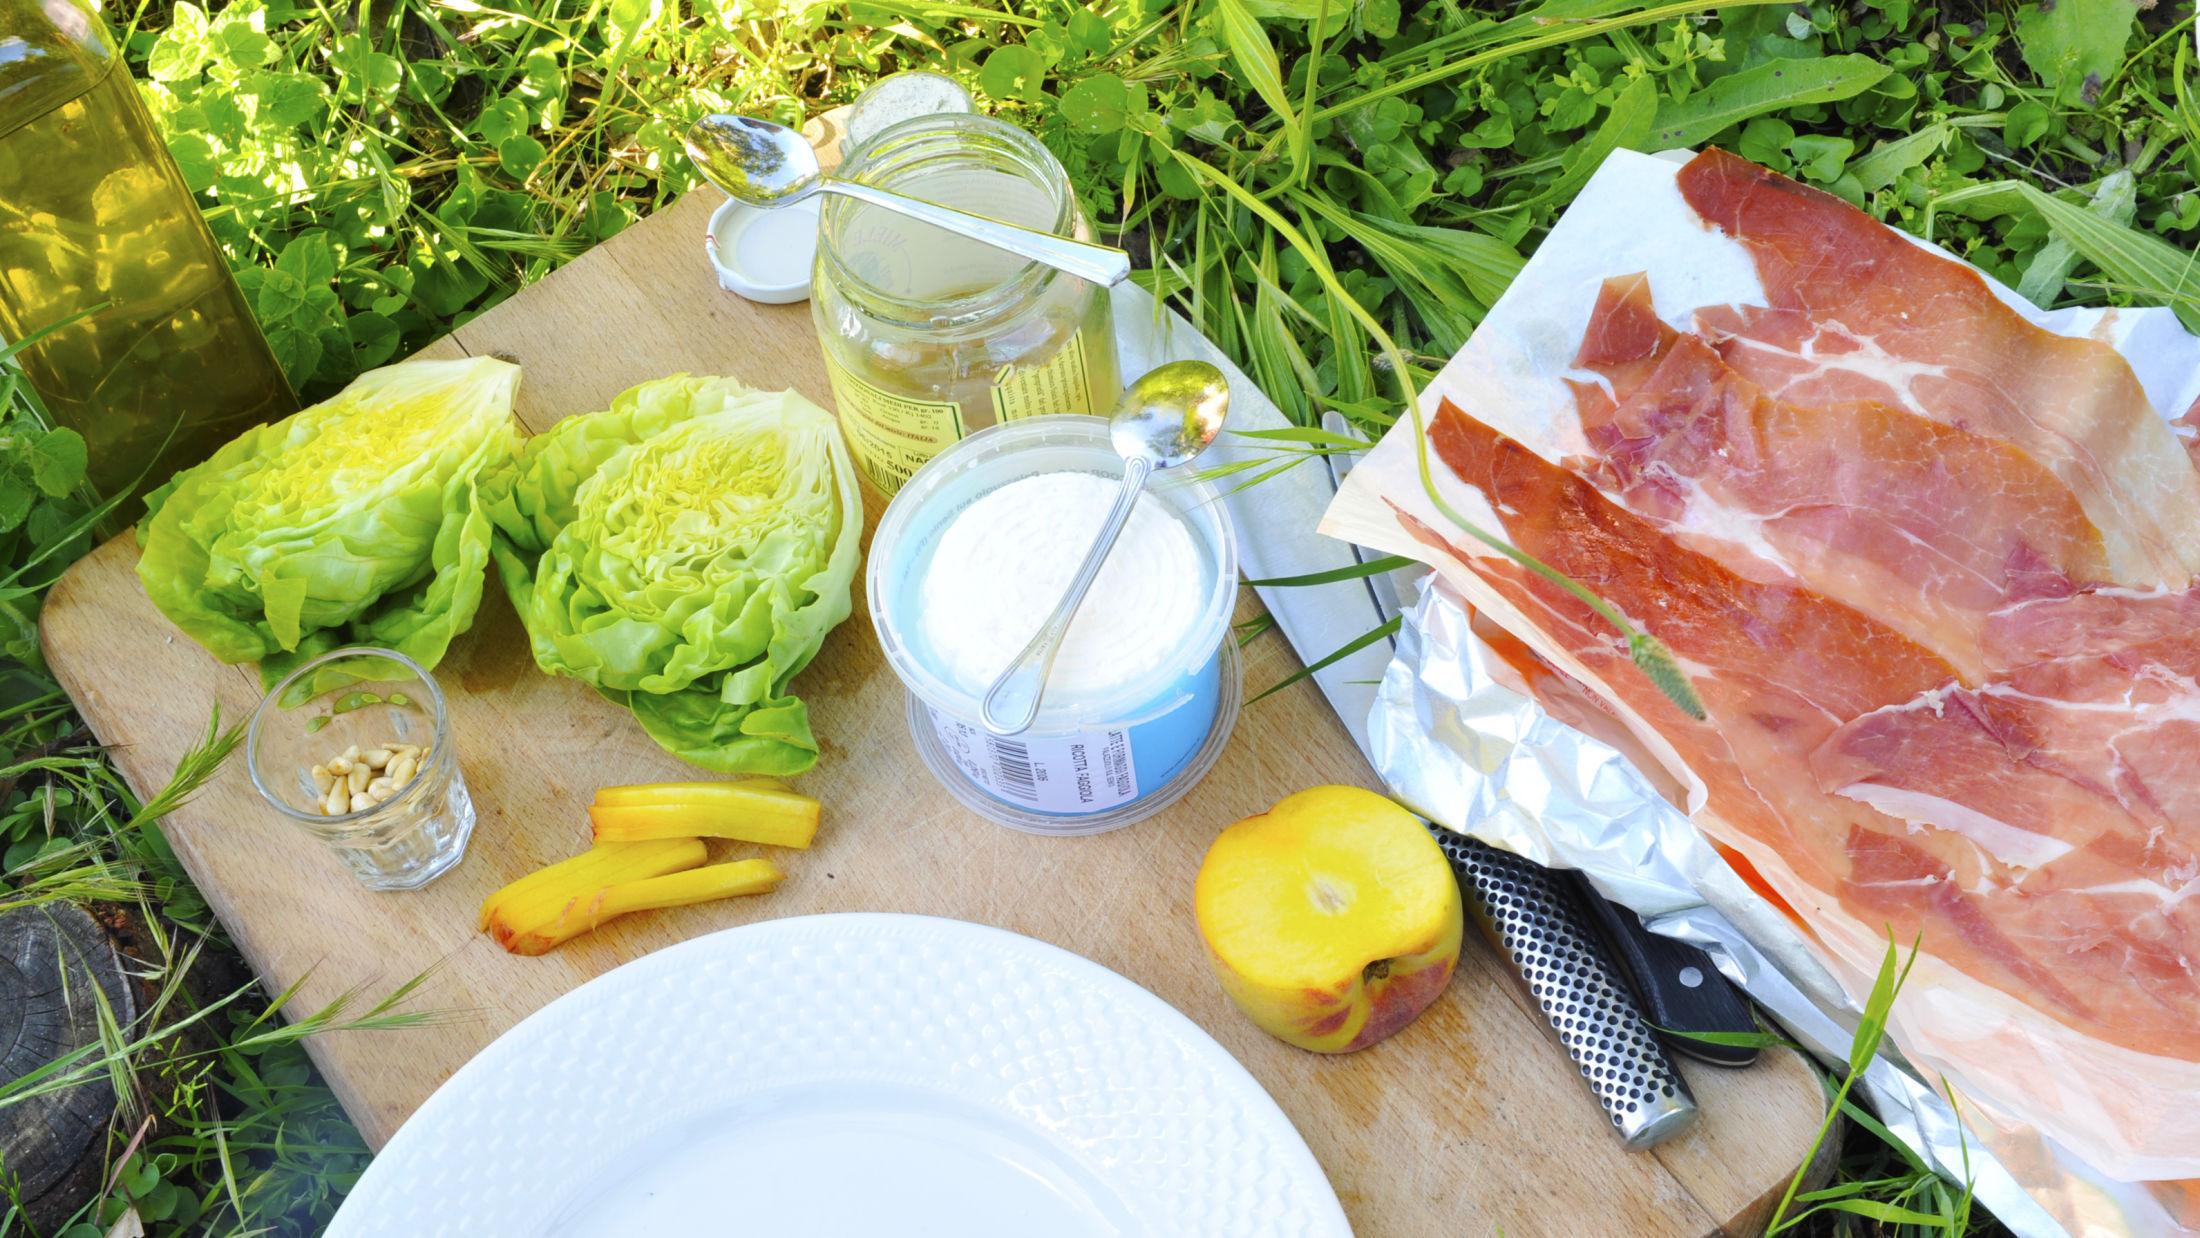 I DET GRØNNE: Grillet salat er enkelt å tilberede ute på tur. Foto: Jon Krog Pedersen.